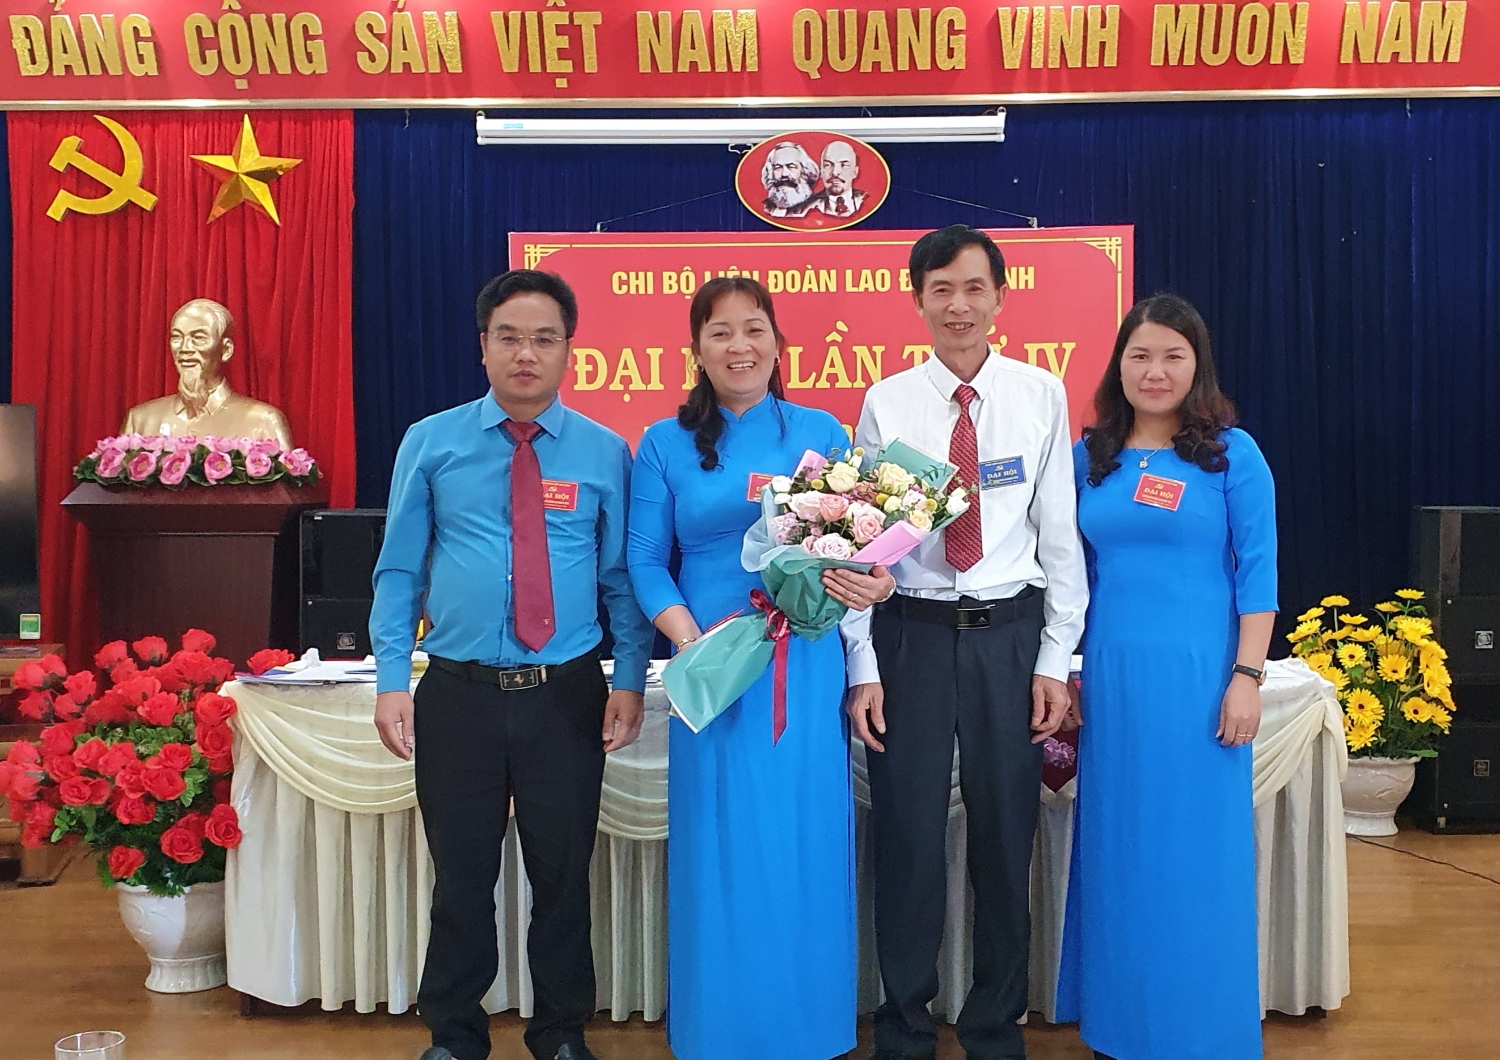 Đồng chí Lê Mạnh Thắng - Phó Bí thư Đảng ủy Khối các cơ quan và doanh nghiệp tỉnh tặng hoa chúc mừng cấp ủy chi bộ khóa IV, nhiệm kỳ 2020-2025